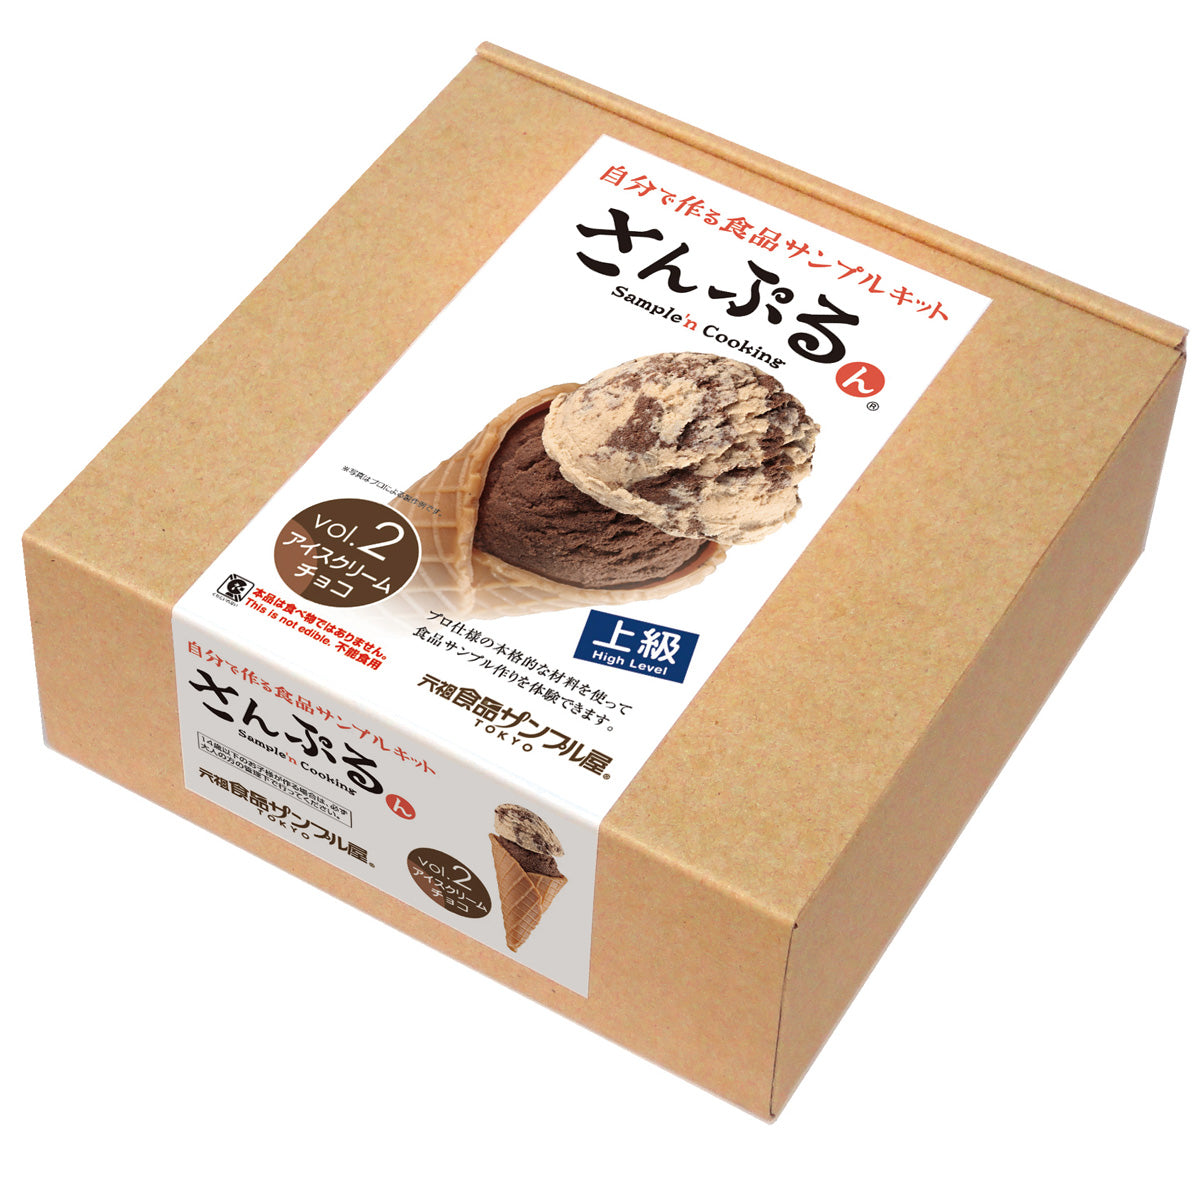 自分でつくる食品サンプル製作キット「さんぷるん アイスクリームvol.2 チョコレート」のパッケージ画像です。